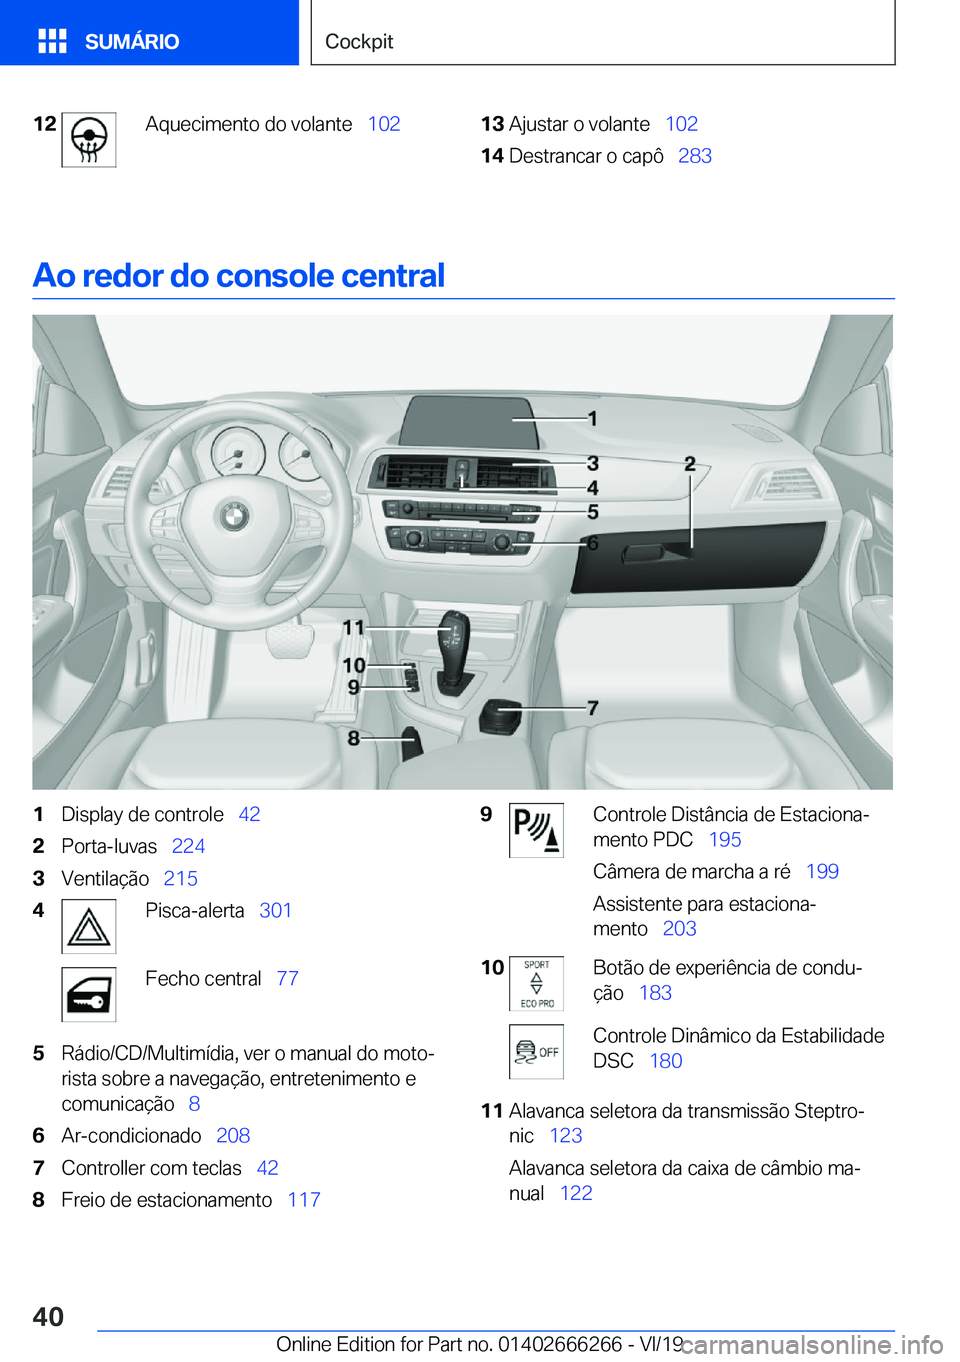 BMW 2 SERIES COUPE 2020  Manual do condutor (in Portuguese) �1�2�A�q�u�e�c�i�m�e�n�t�o��d�o��v�o�l�a�n�t�e\_�1�0�2�1�3�A�j�u�s�t�a�r��o��v�o�l�a�n�t�e\_�1�0�2�1�4�D�e�s�t�r�a�n�c�a�r��o��c�a�p�ô\_ �2�8�3
�A�o��r�e�d�o�r��d�o��c�o�n�s�o�l�e��c�